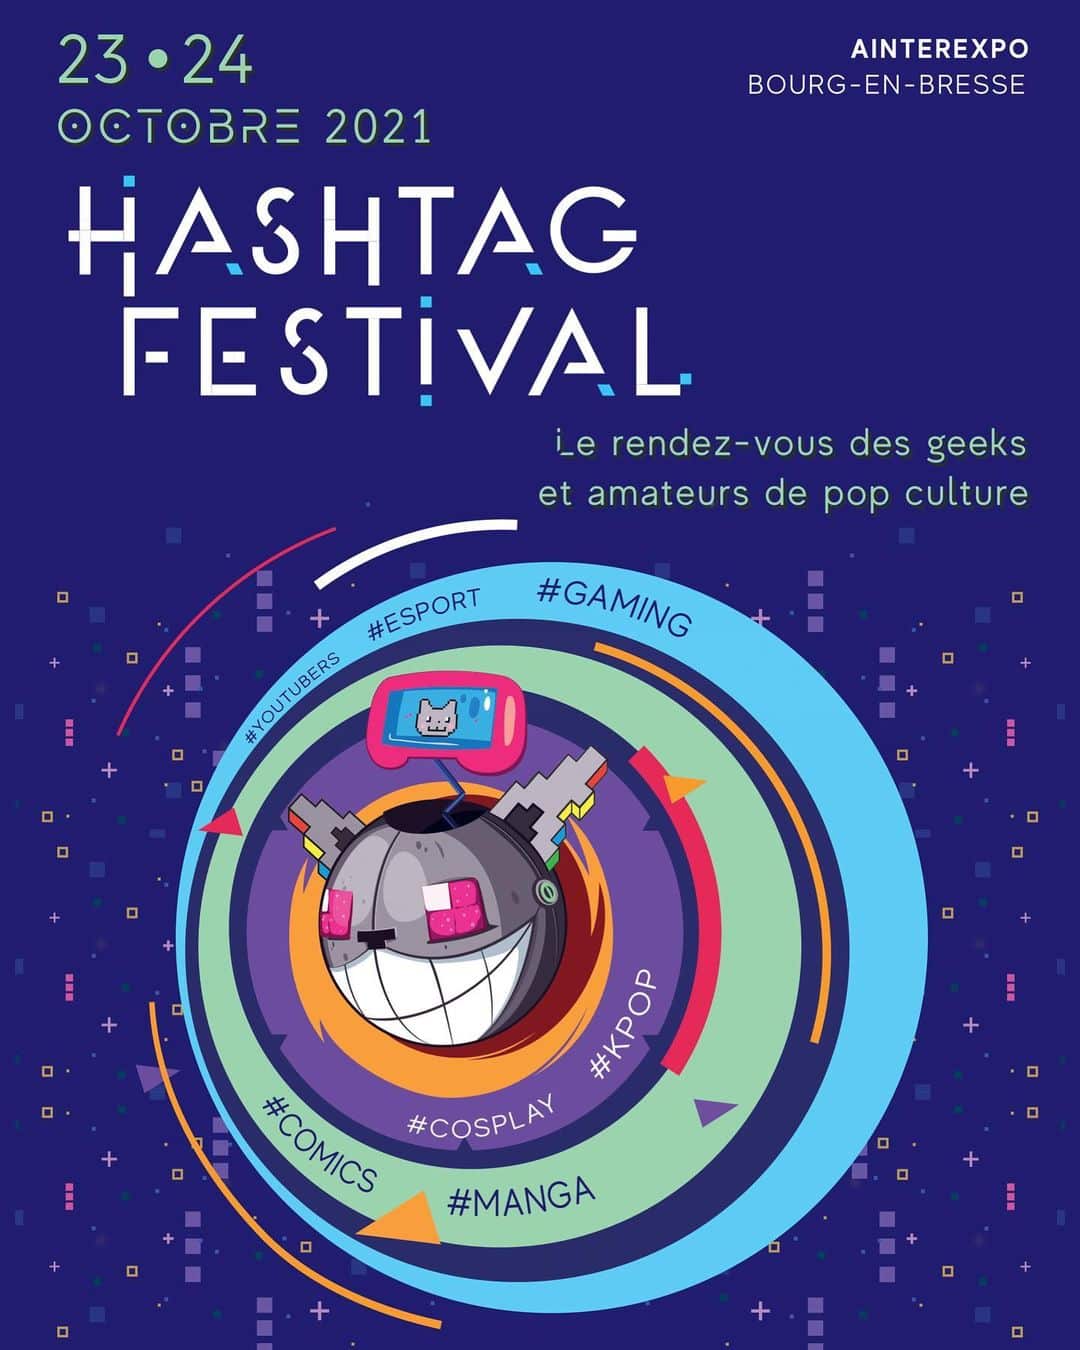 Hashtag Festival #01 - Javras, plus que du son